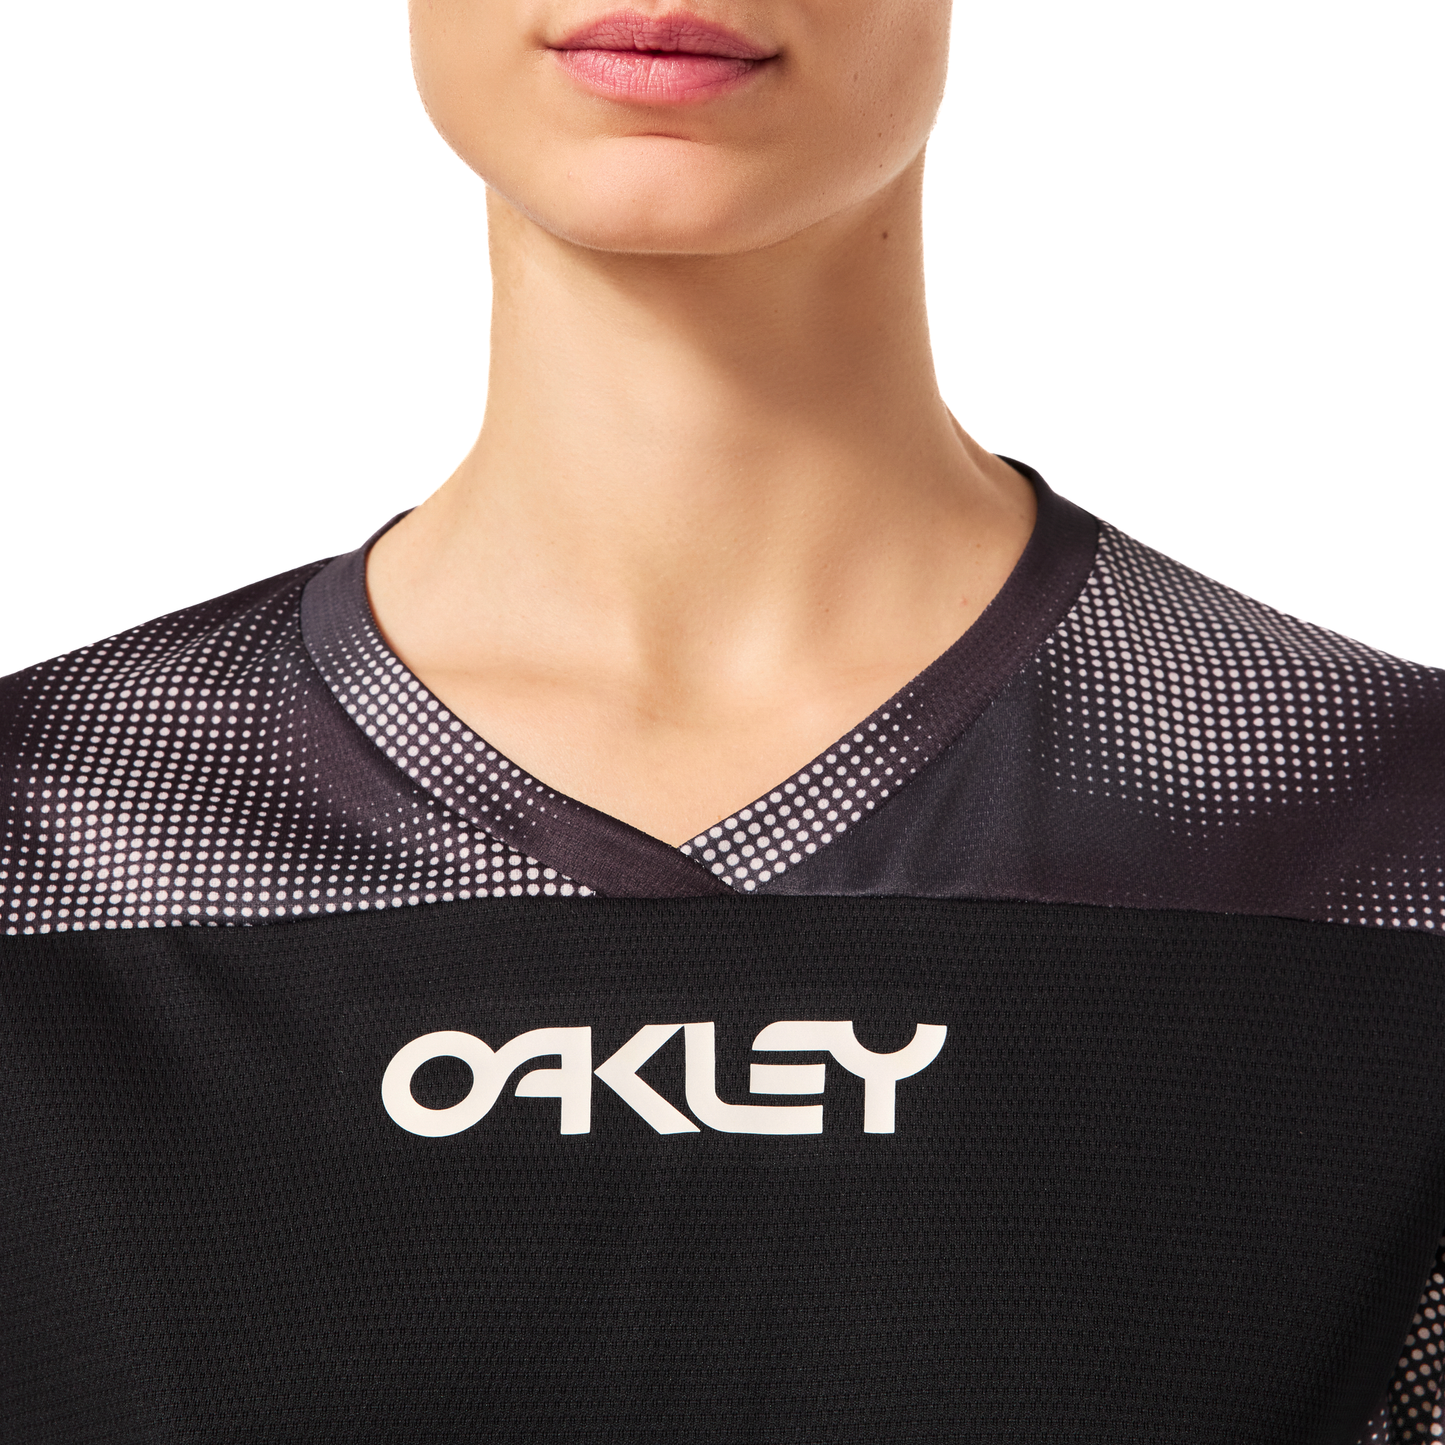 Oakley Women's Maven Coast Long Sleeve Jersey - Women's XL - Organic Spots Black